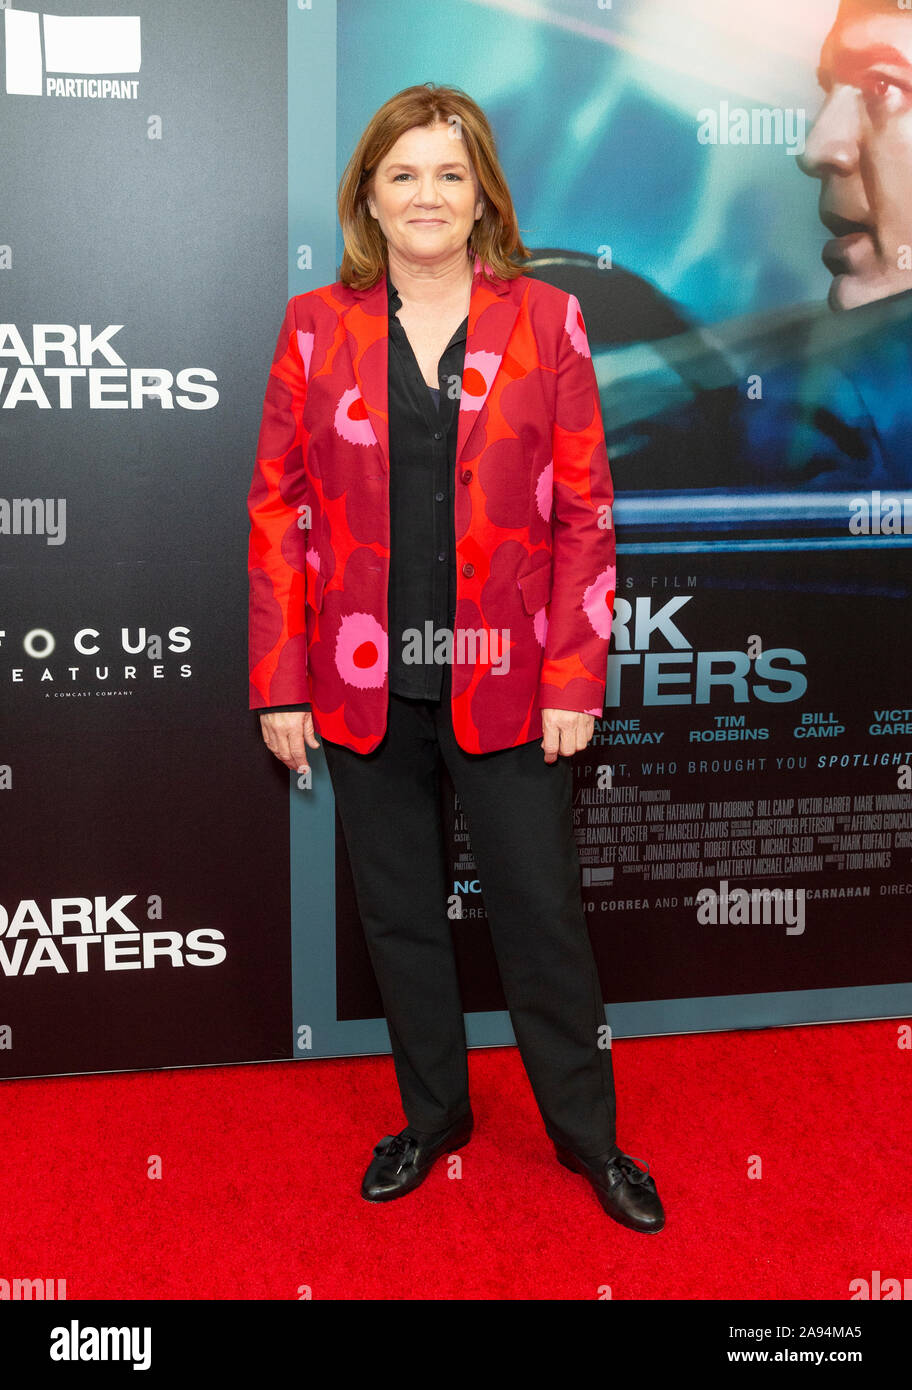 New York, NY - 12 de noviembre de 2019: Mare Winningham asiste a la premiere de aguas oscuras en el Walter Reade Theater en el Lincoln Center. Foto de stock